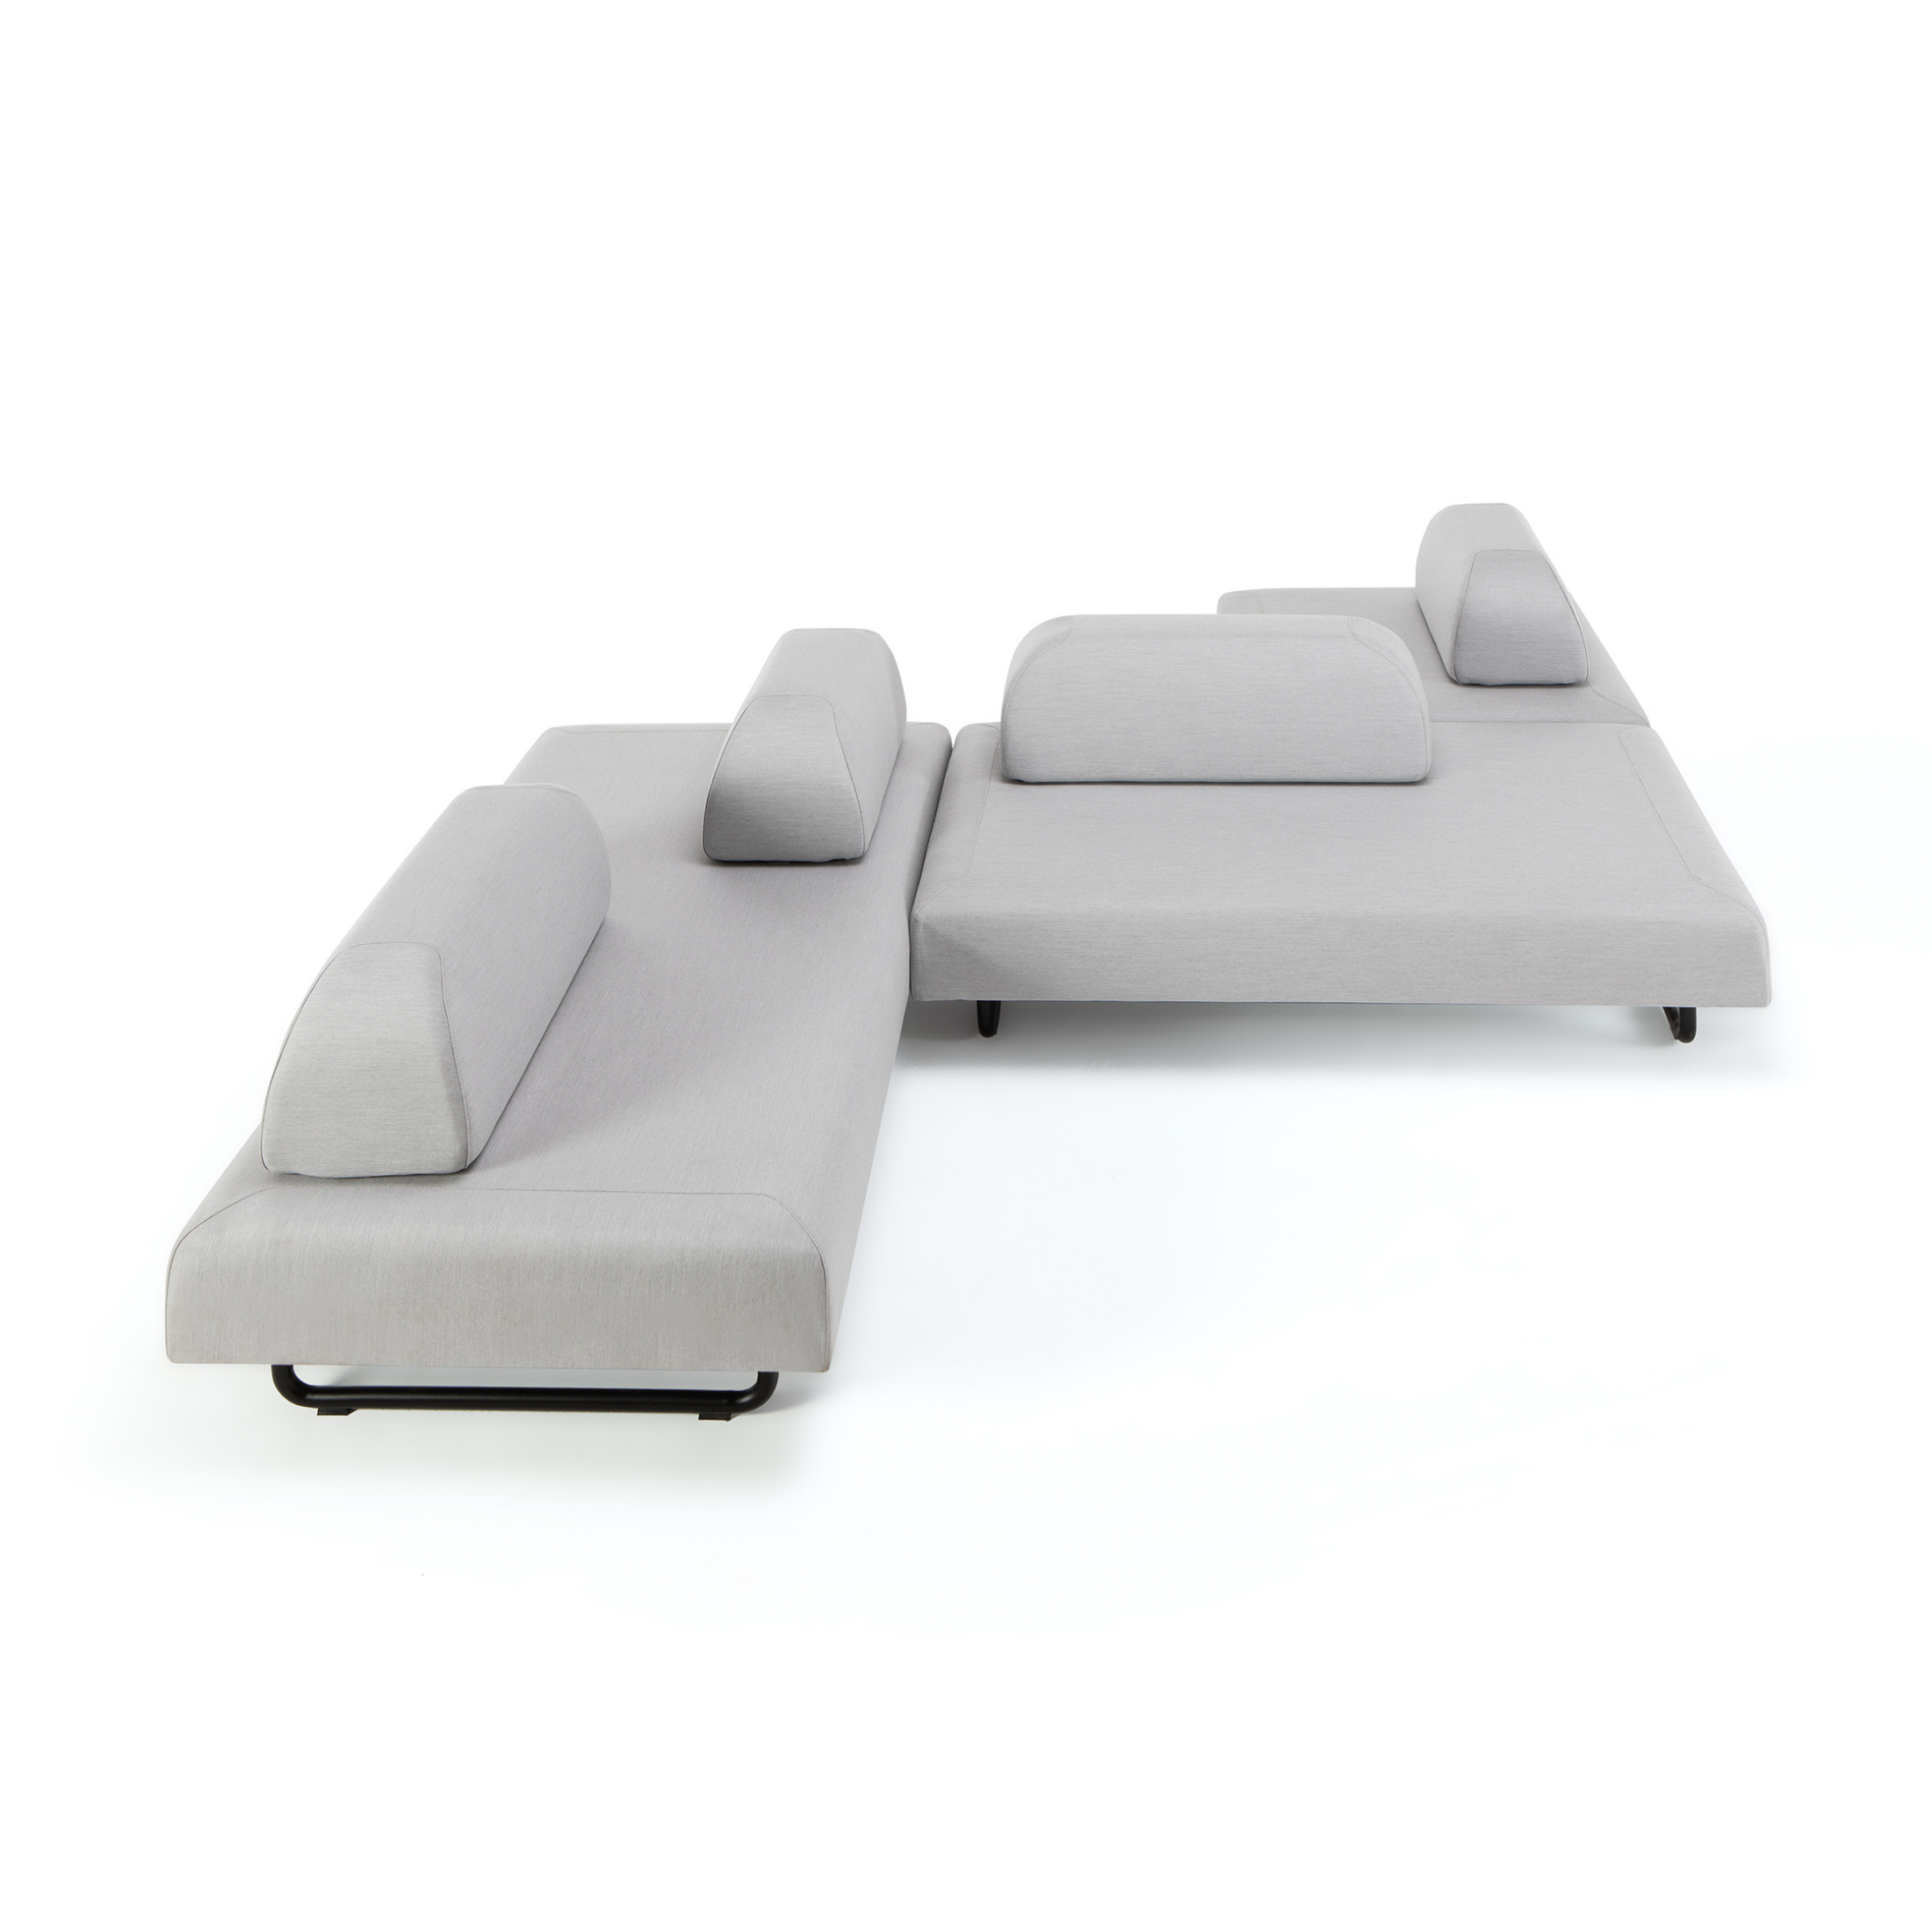 Modulo triplo divano imbottito "Santa Fe" in metallo da giardino cm 190x90 40h